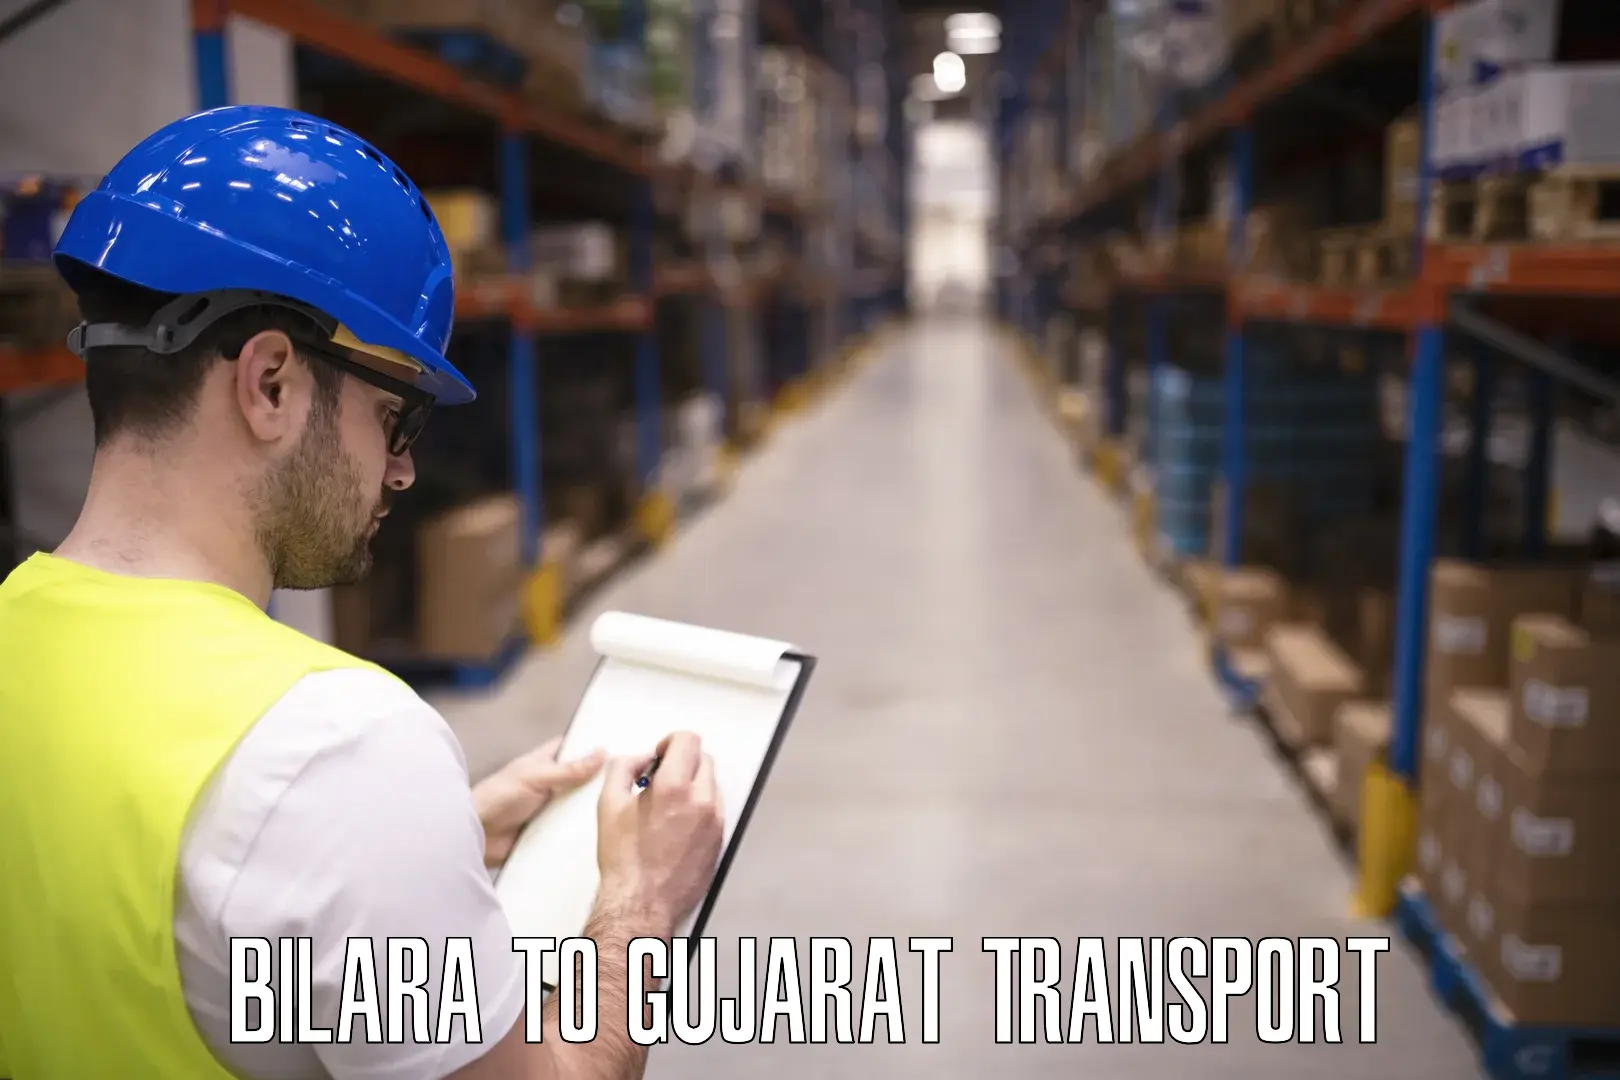 Vehicle transport services Bilara to Patan Gujarat